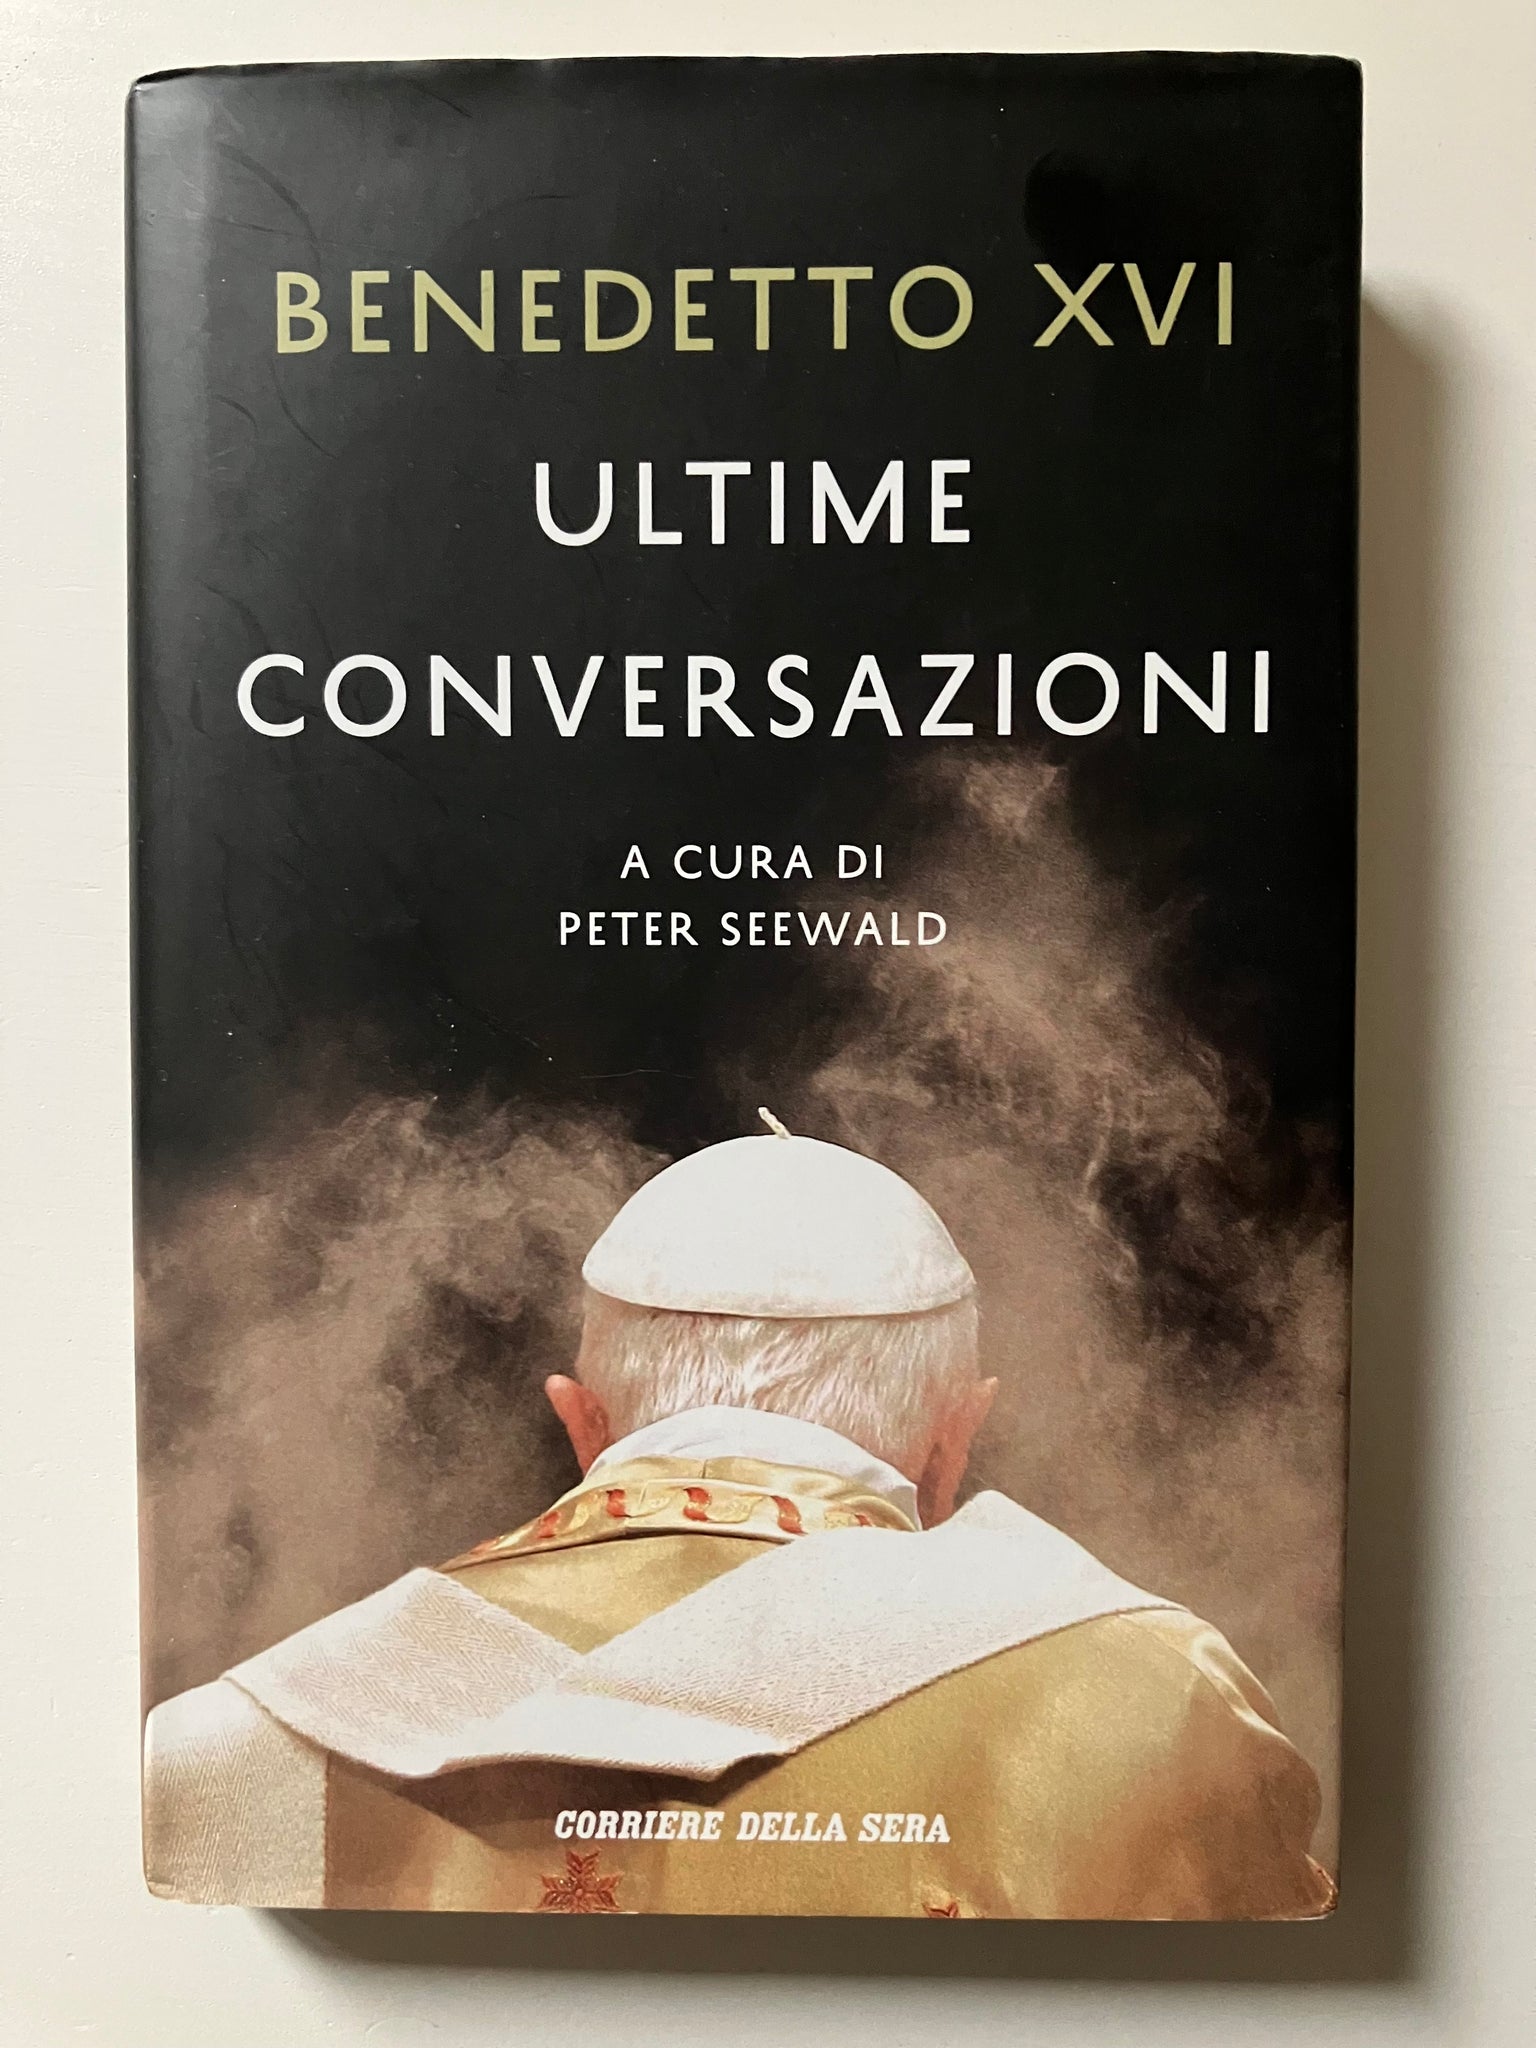 Peter Seewald, a cura di - Benedetto XVI Ultime conversazioni